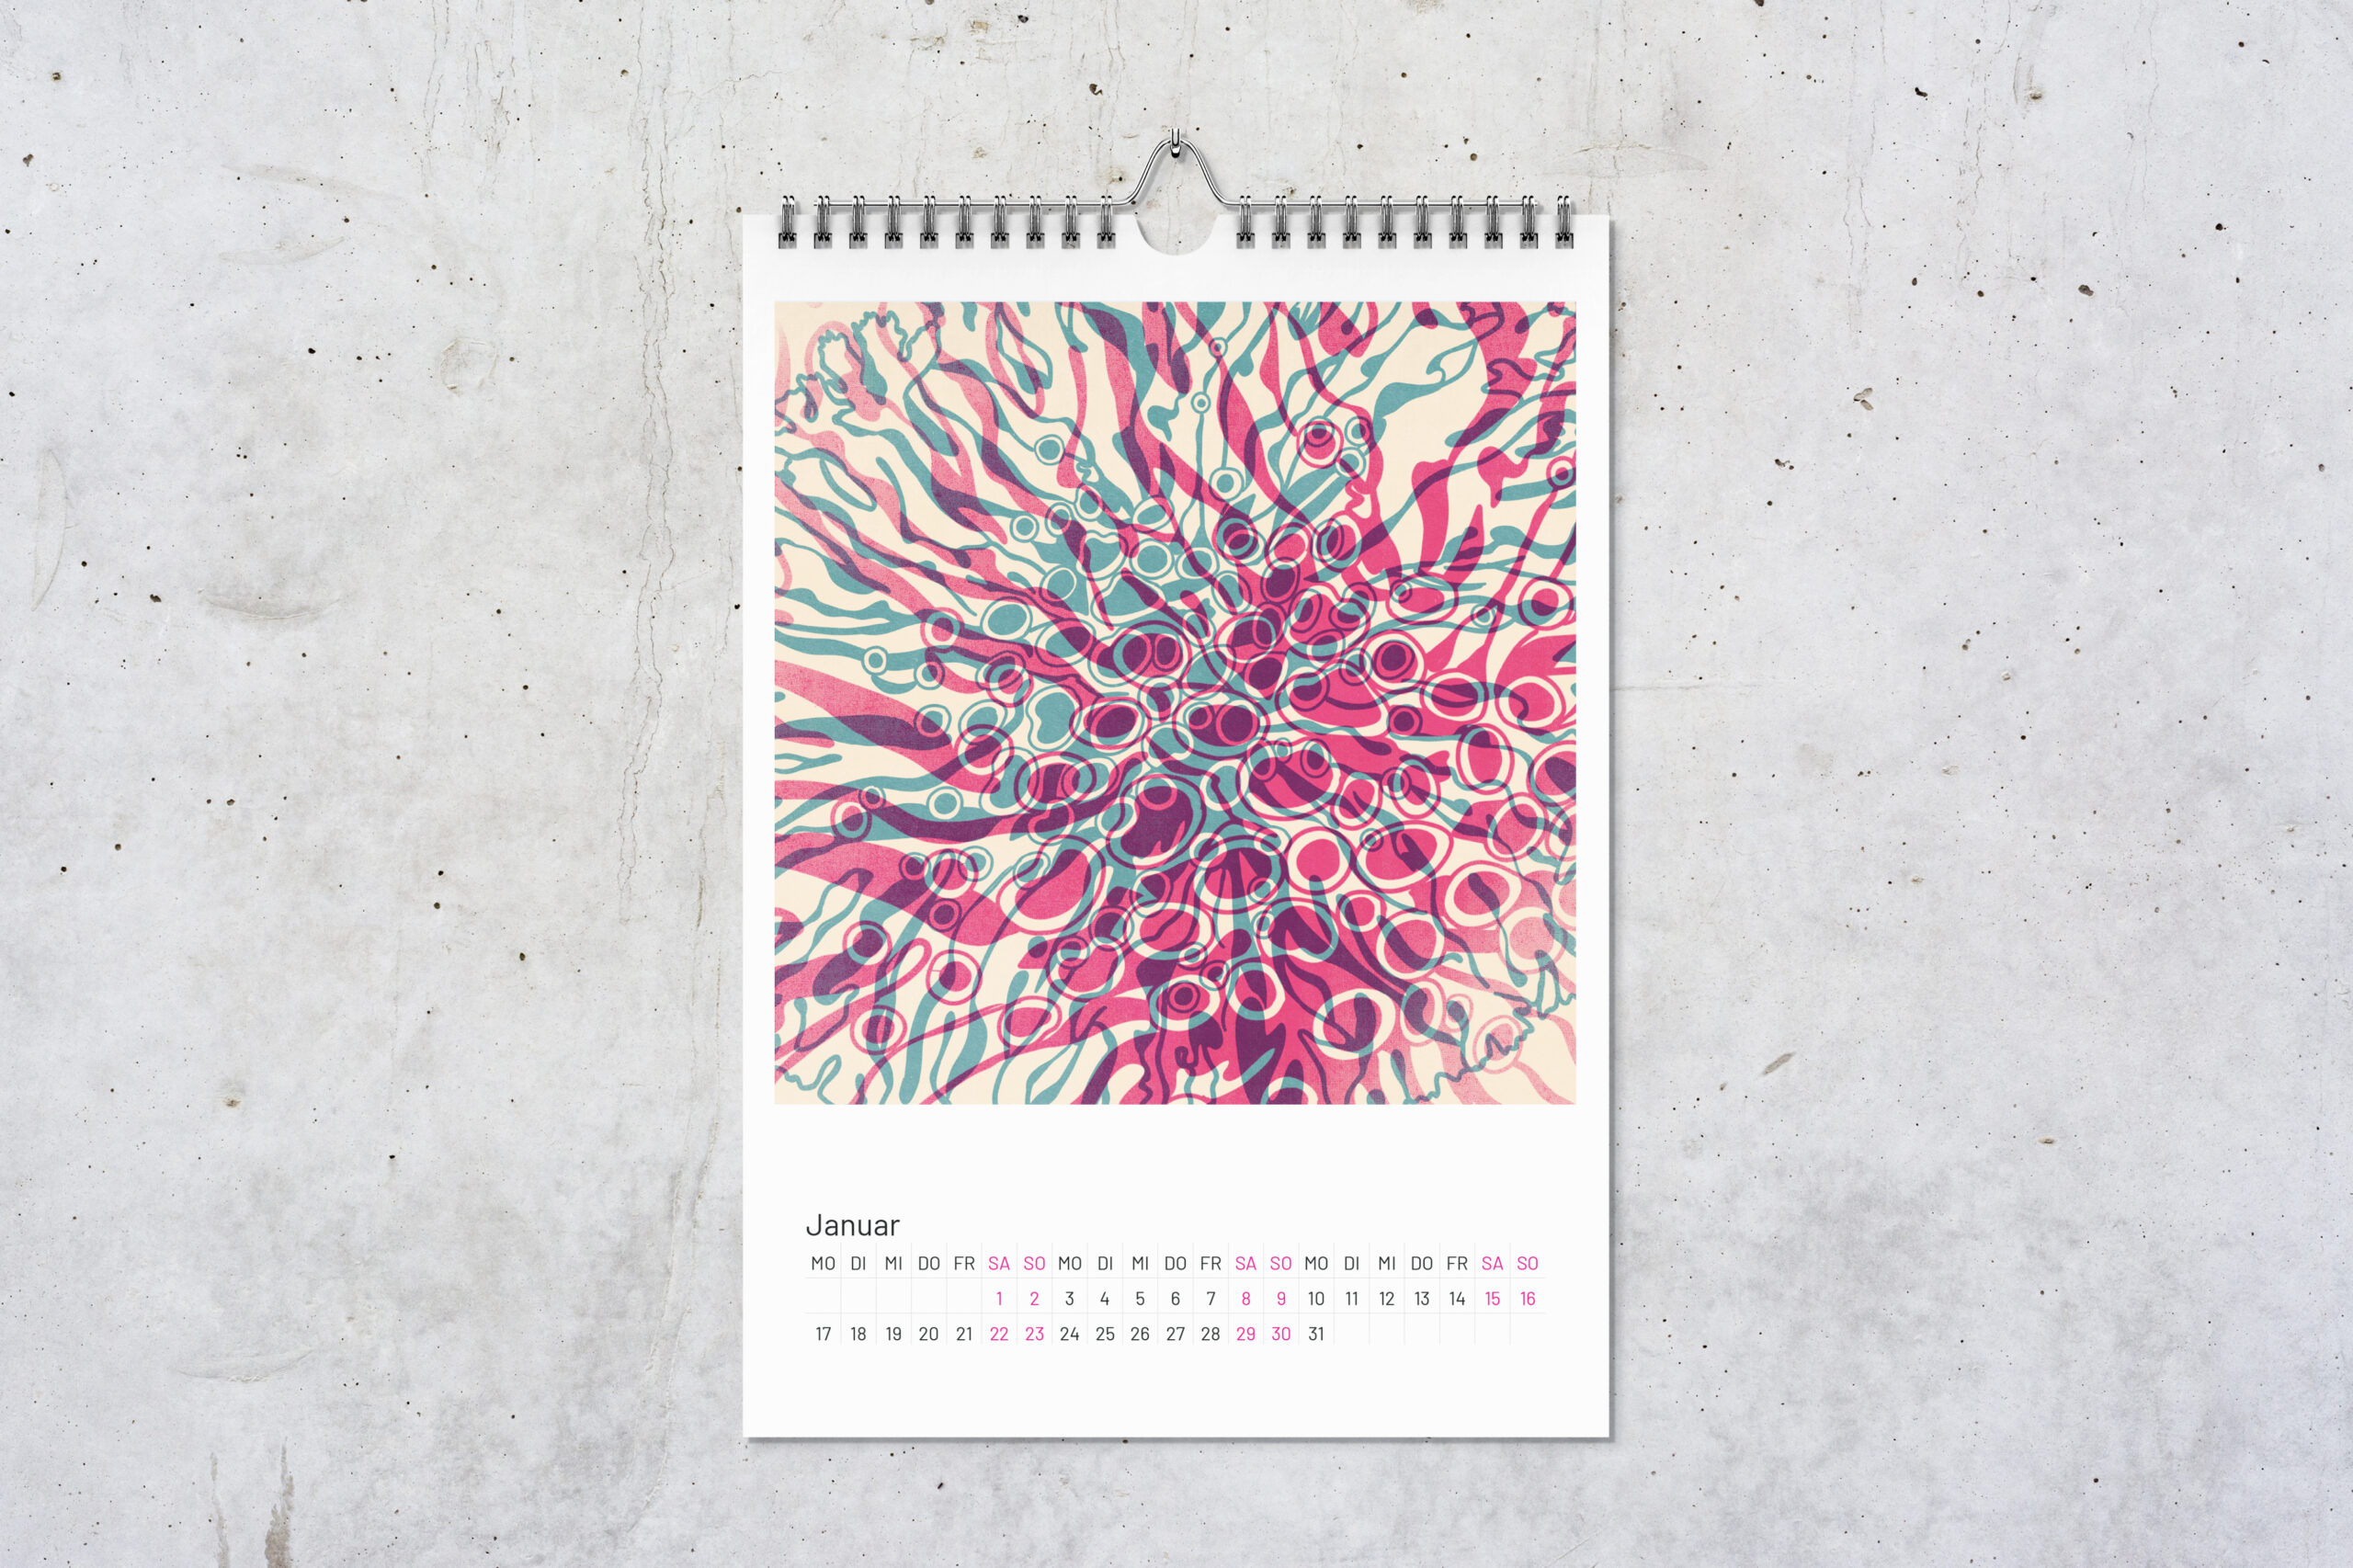 Kalenderblatt Flechten für Januar mit zwei digitalen Zeichnungen im Risografie Stil. Die Zeichnungen in pink und blau überlagern sich